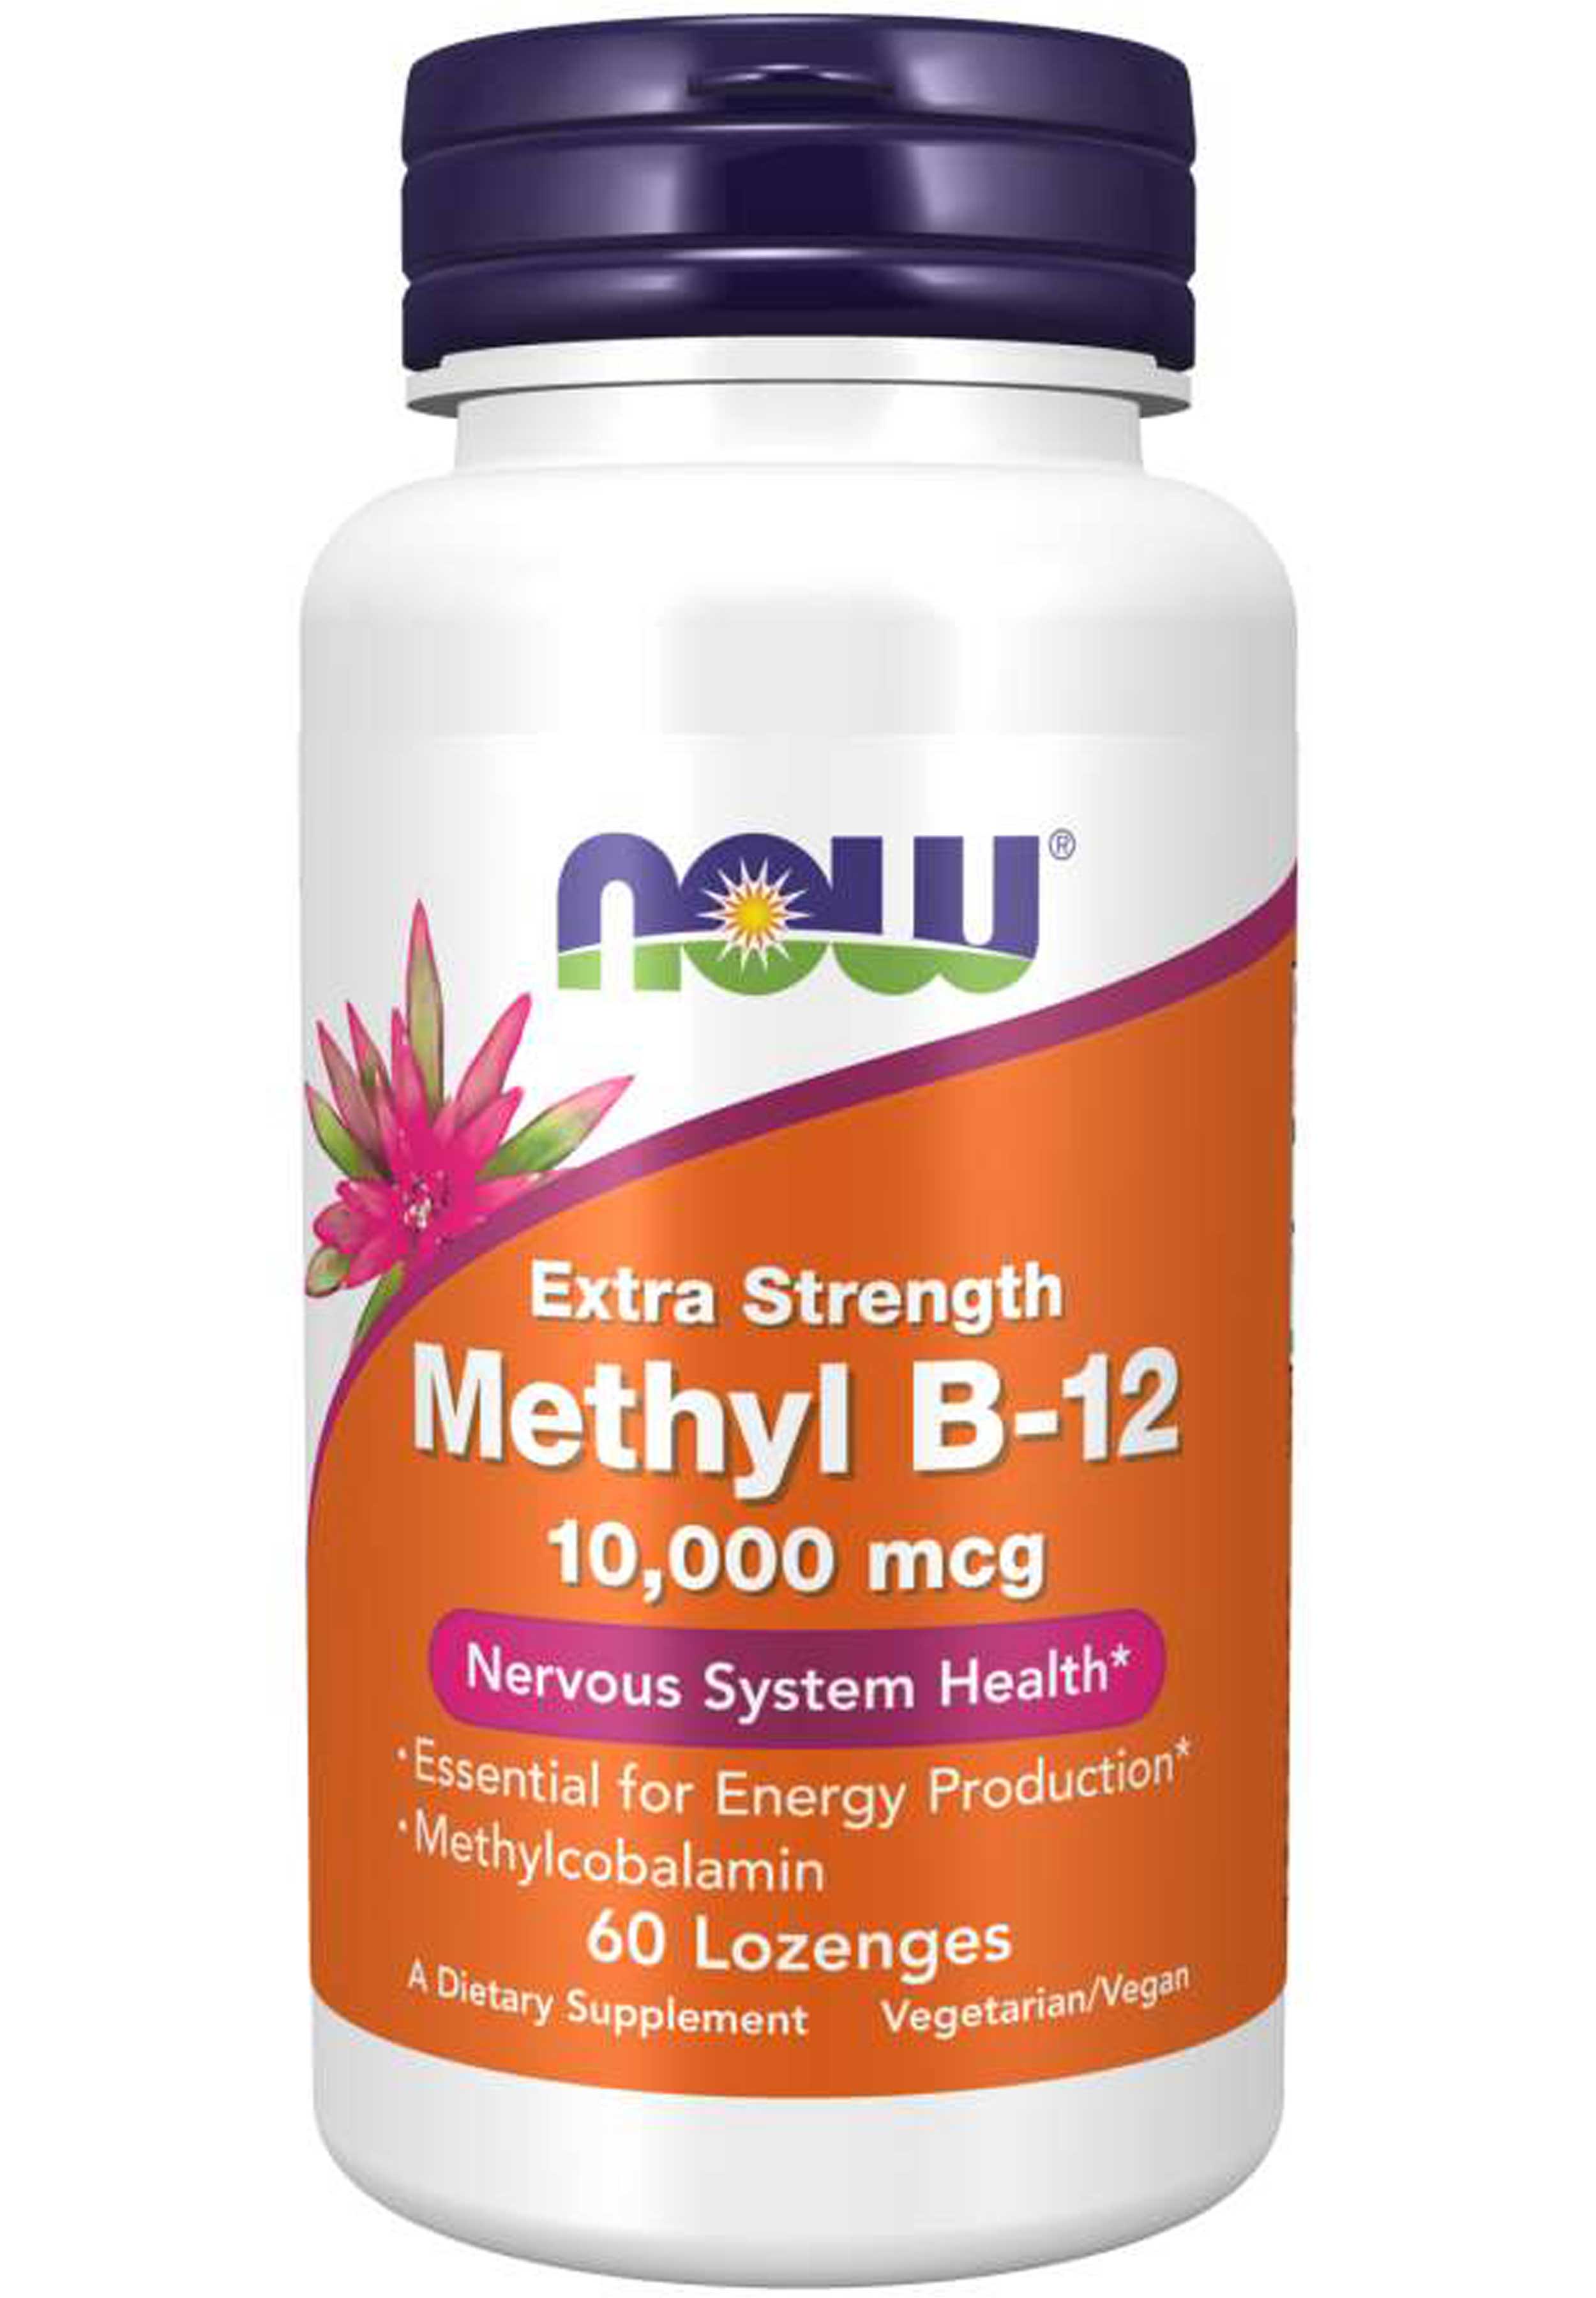 NOW Extra Strength Methyl B-12 10,000 mcg